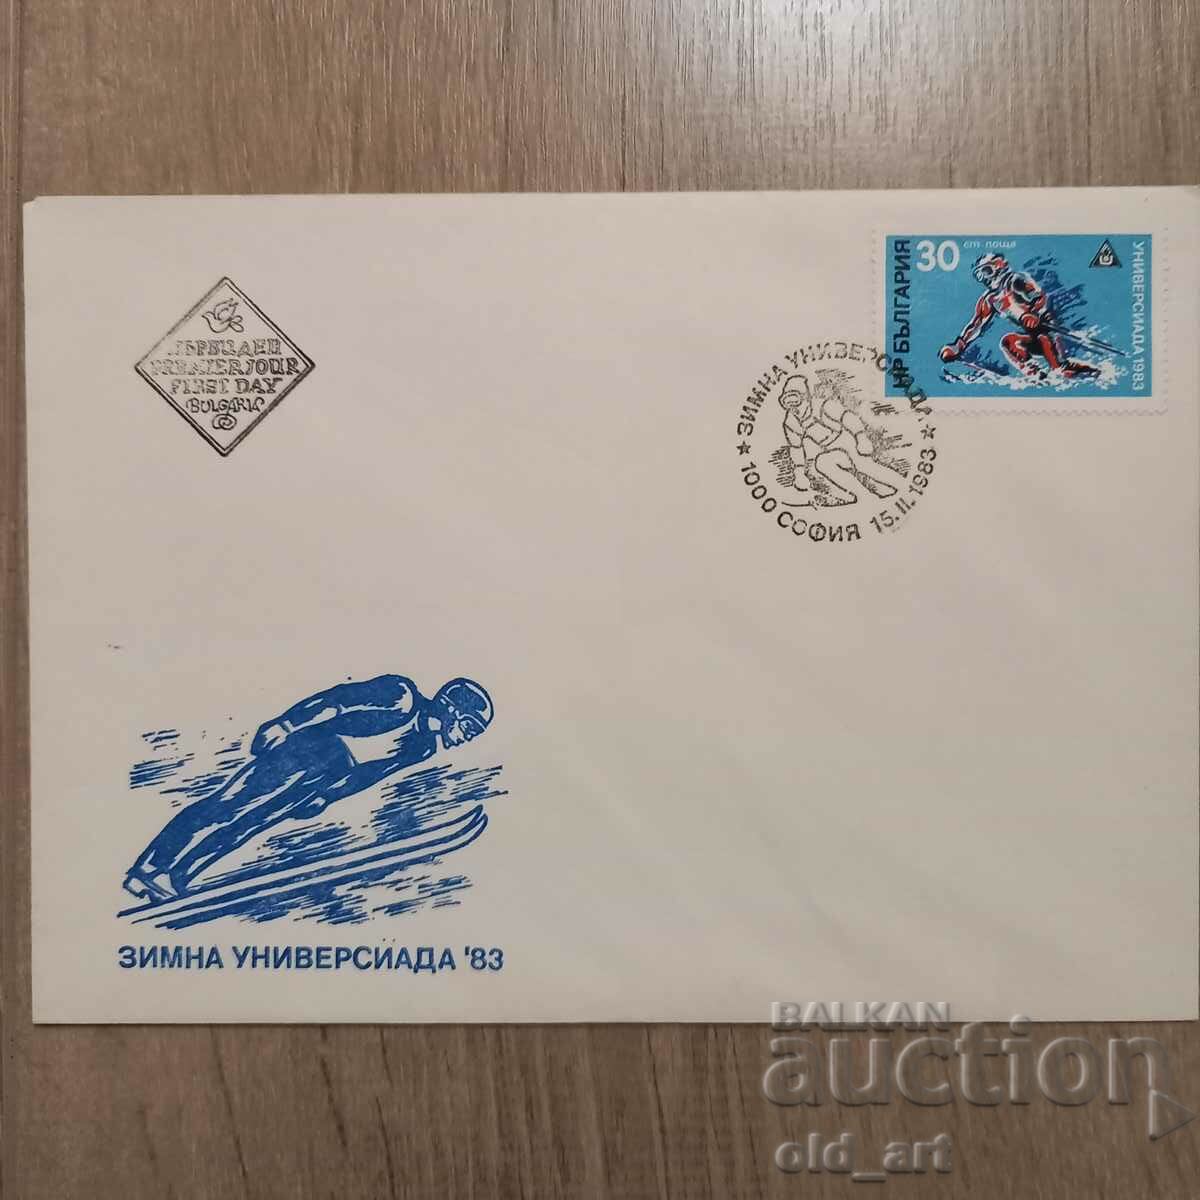 Ταχυδρομικός φάκελος - Winter Universiade 1983